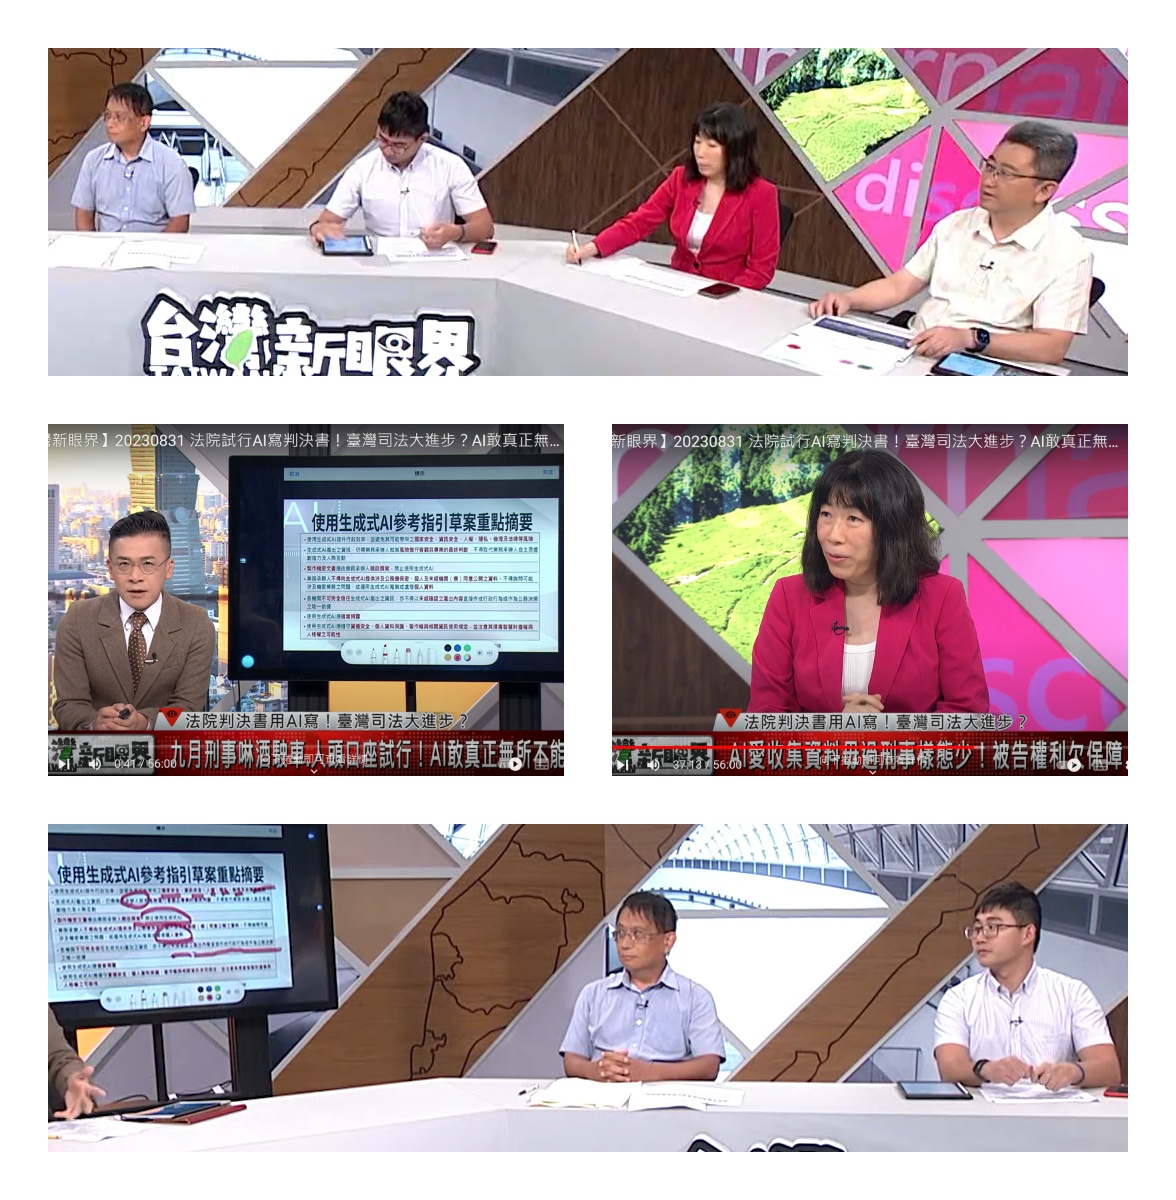 2023/08/31-公視台語台「台灣新眼界」談生成式AI 科技的應用與指引